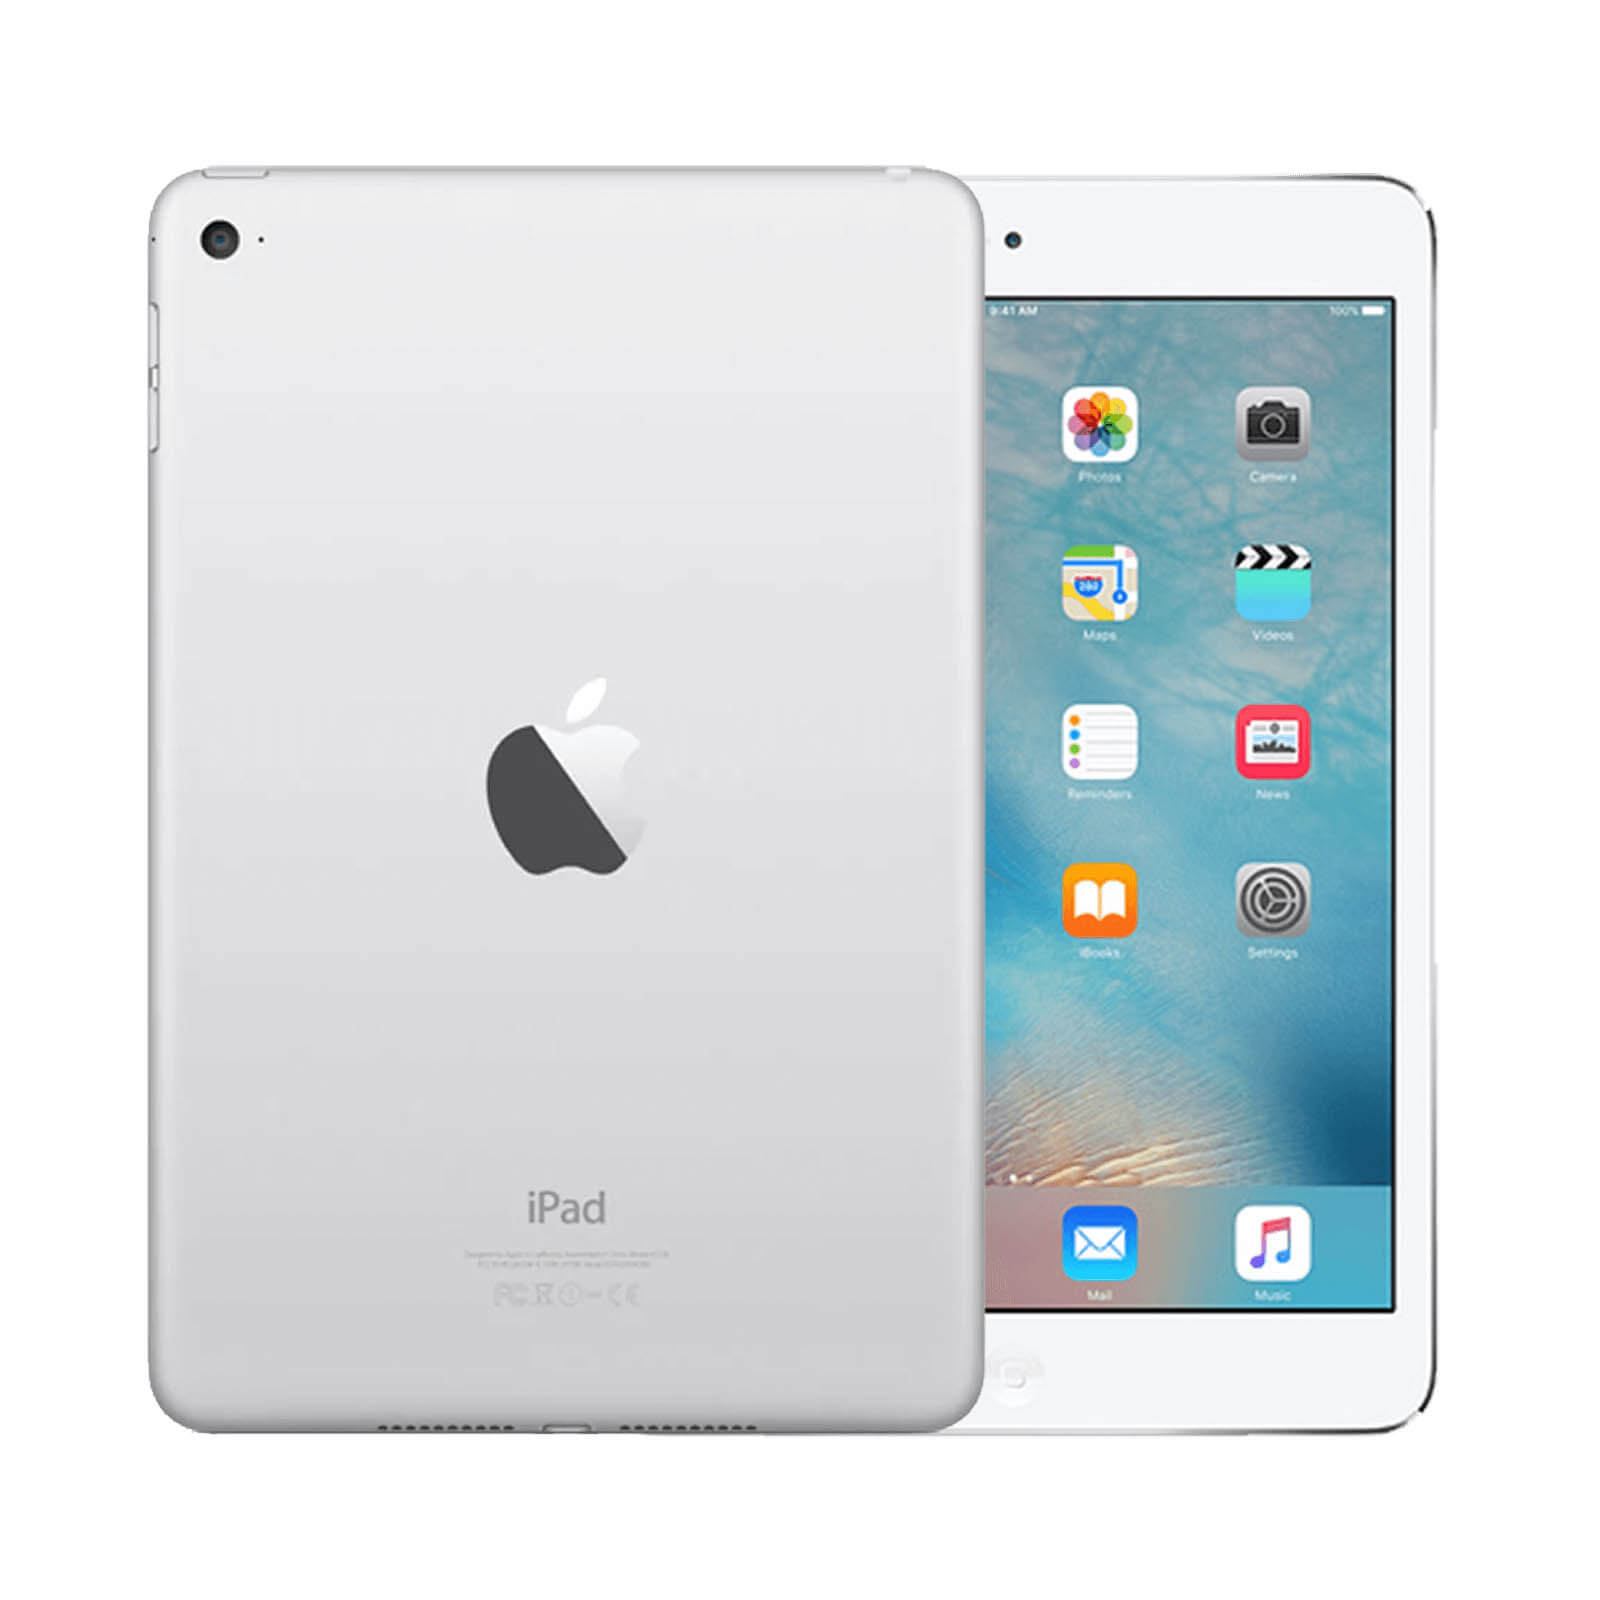 Apple iPad Mini 4 64GB Silver WiFi - Very Good 64GB Silver Very Good